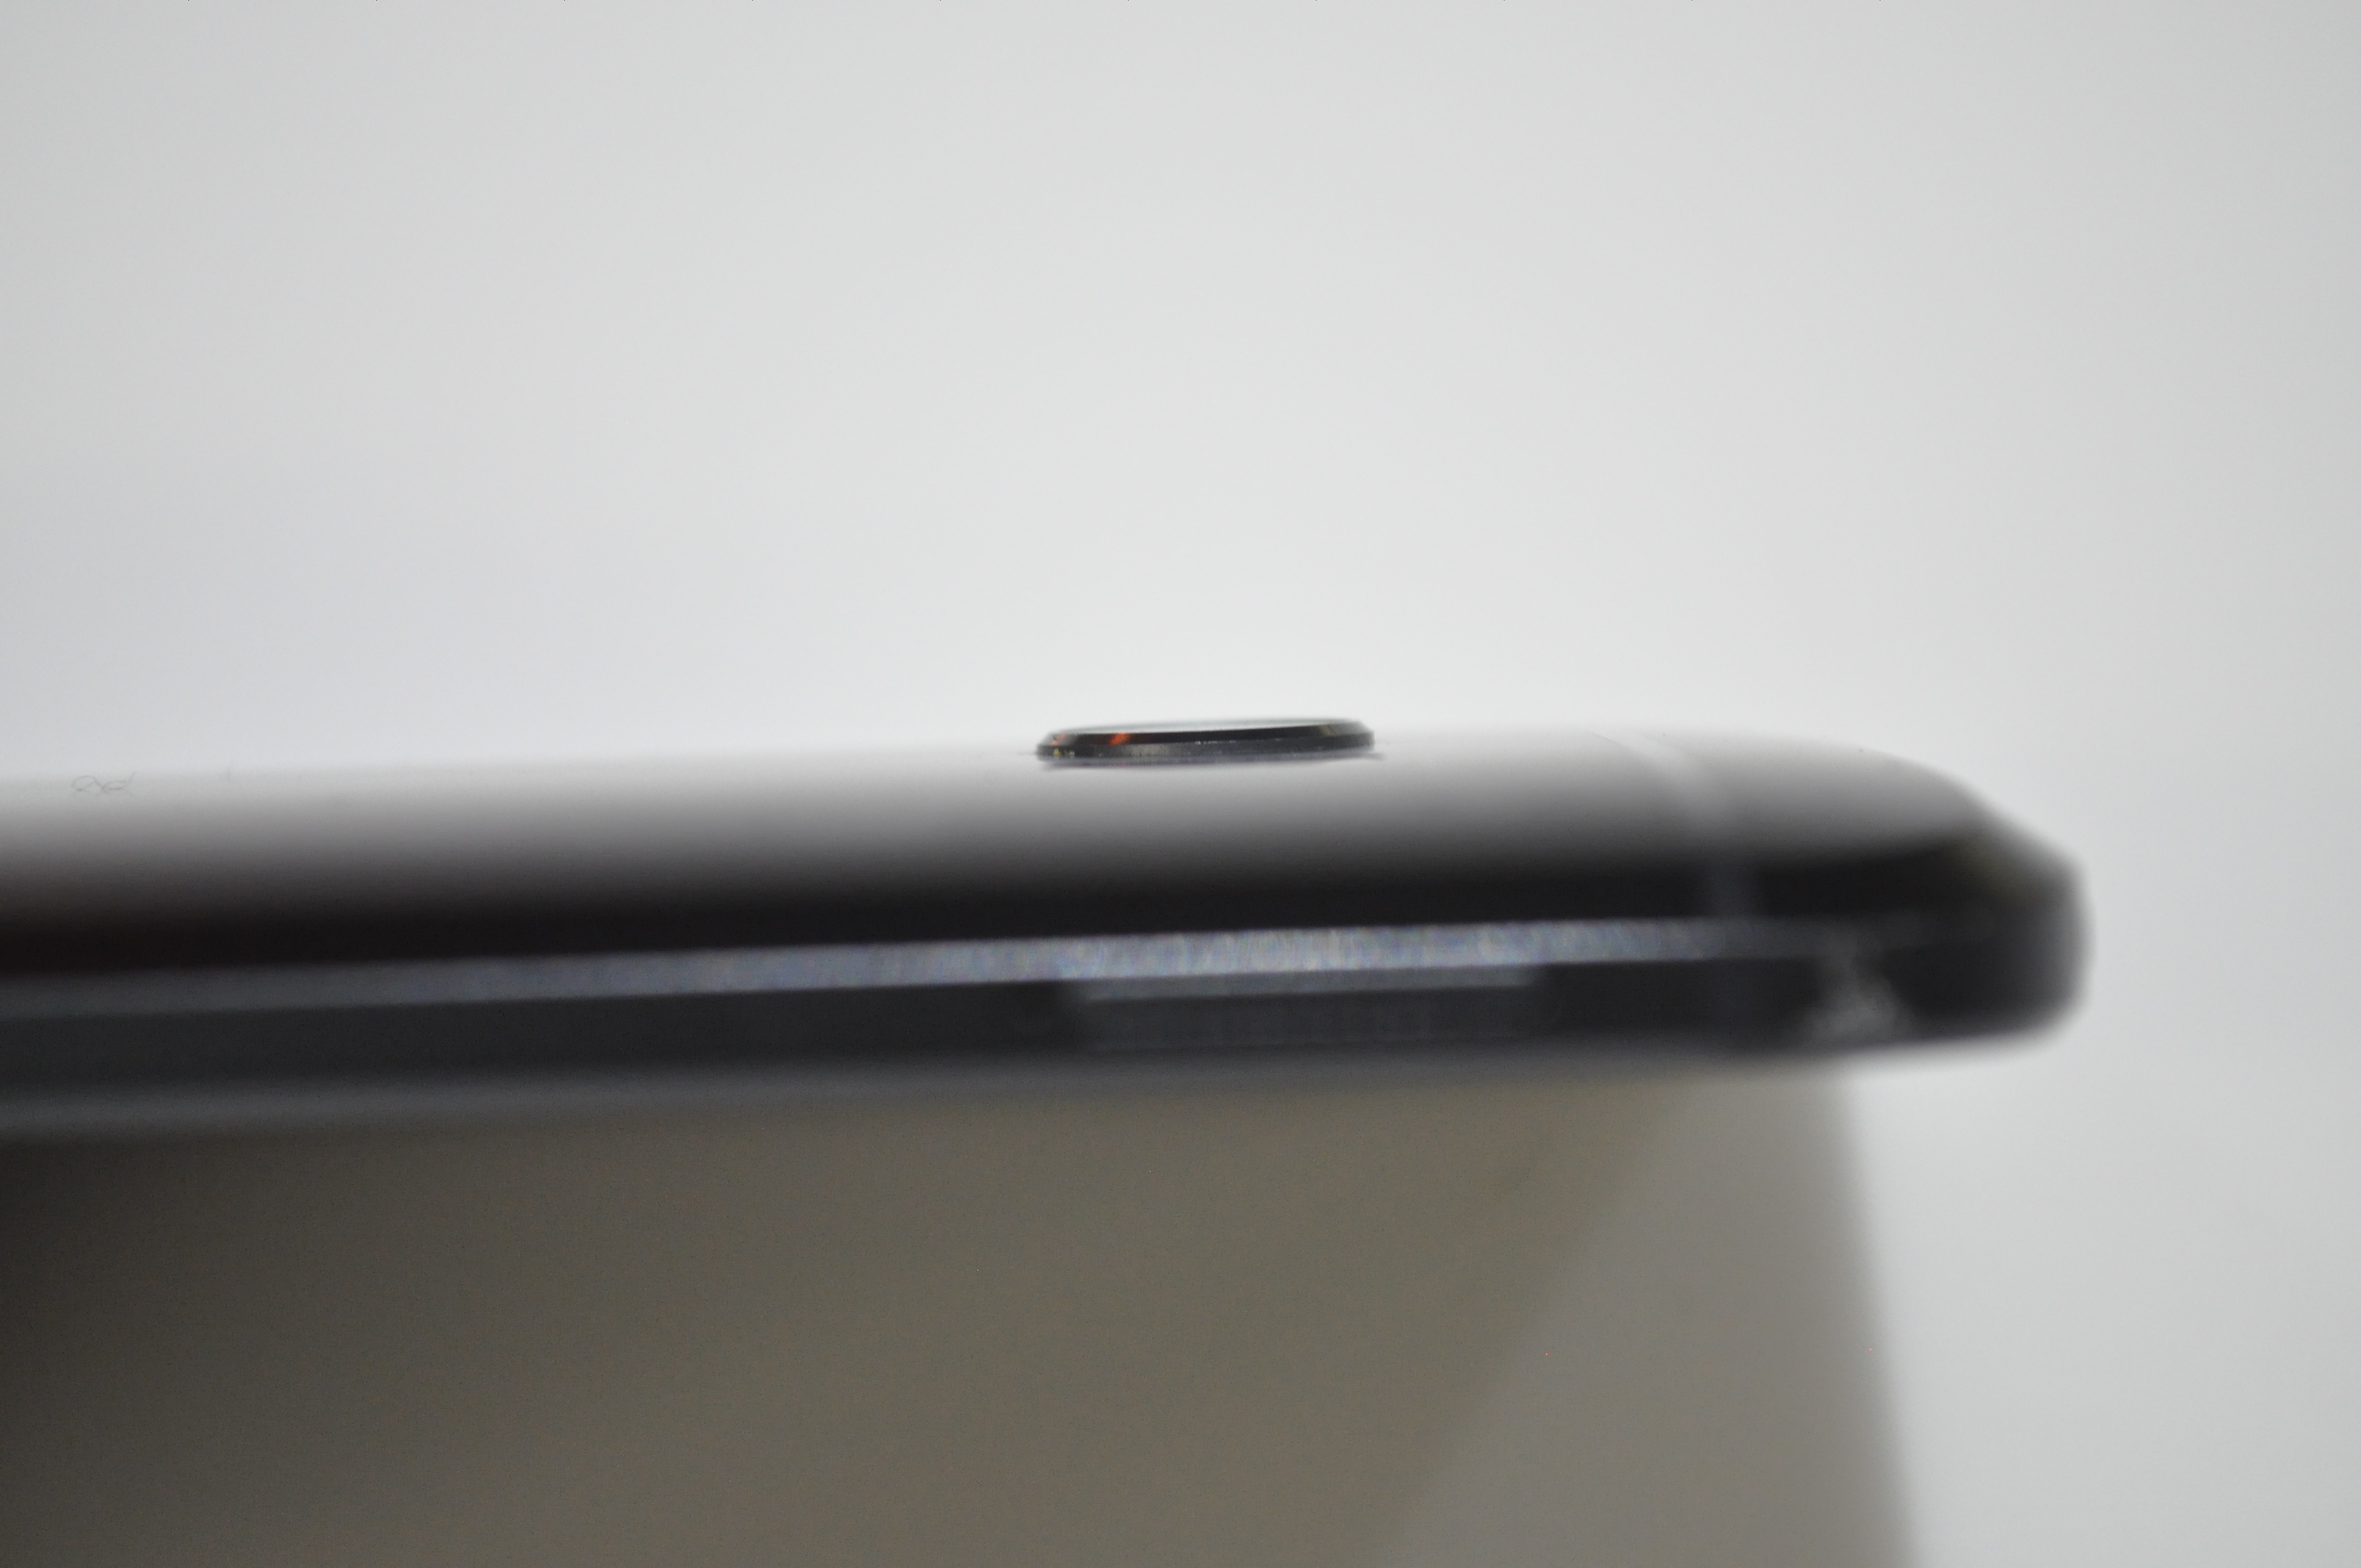 HTC 10 - Camera Bump